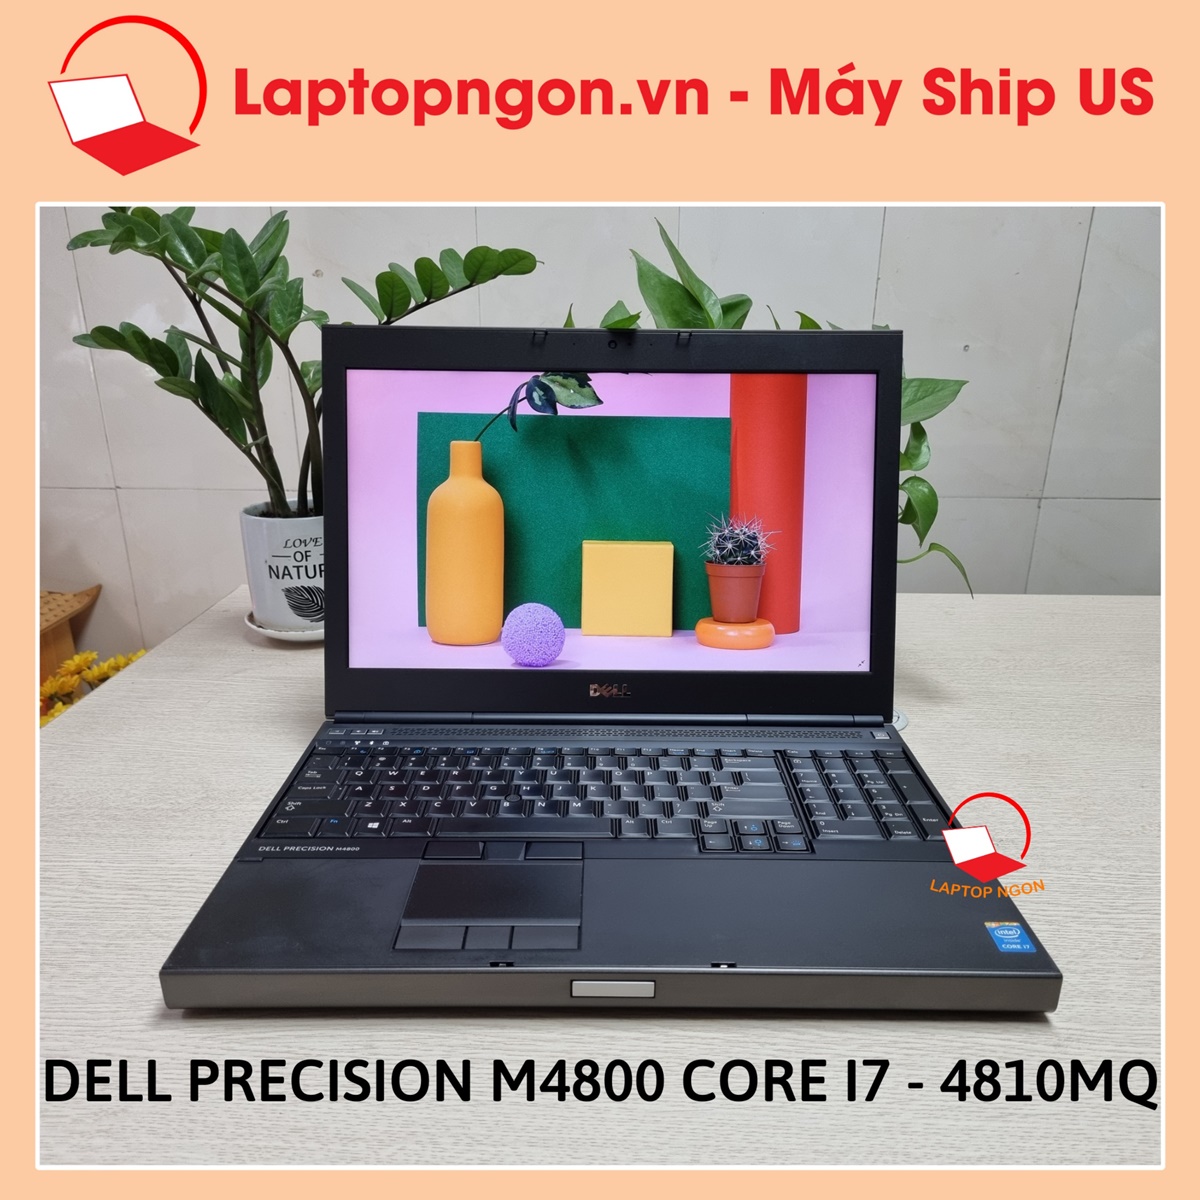 [ Laptop Ngon ] Laptop Máy Tính Dell Precision M4800 Core i7- 4810MQ Màn 15.6inch FHD IPS VGA Quadro K1100 Dành Cho Dân Kỹ Thuật Chuyên Đồ Họa Nặng